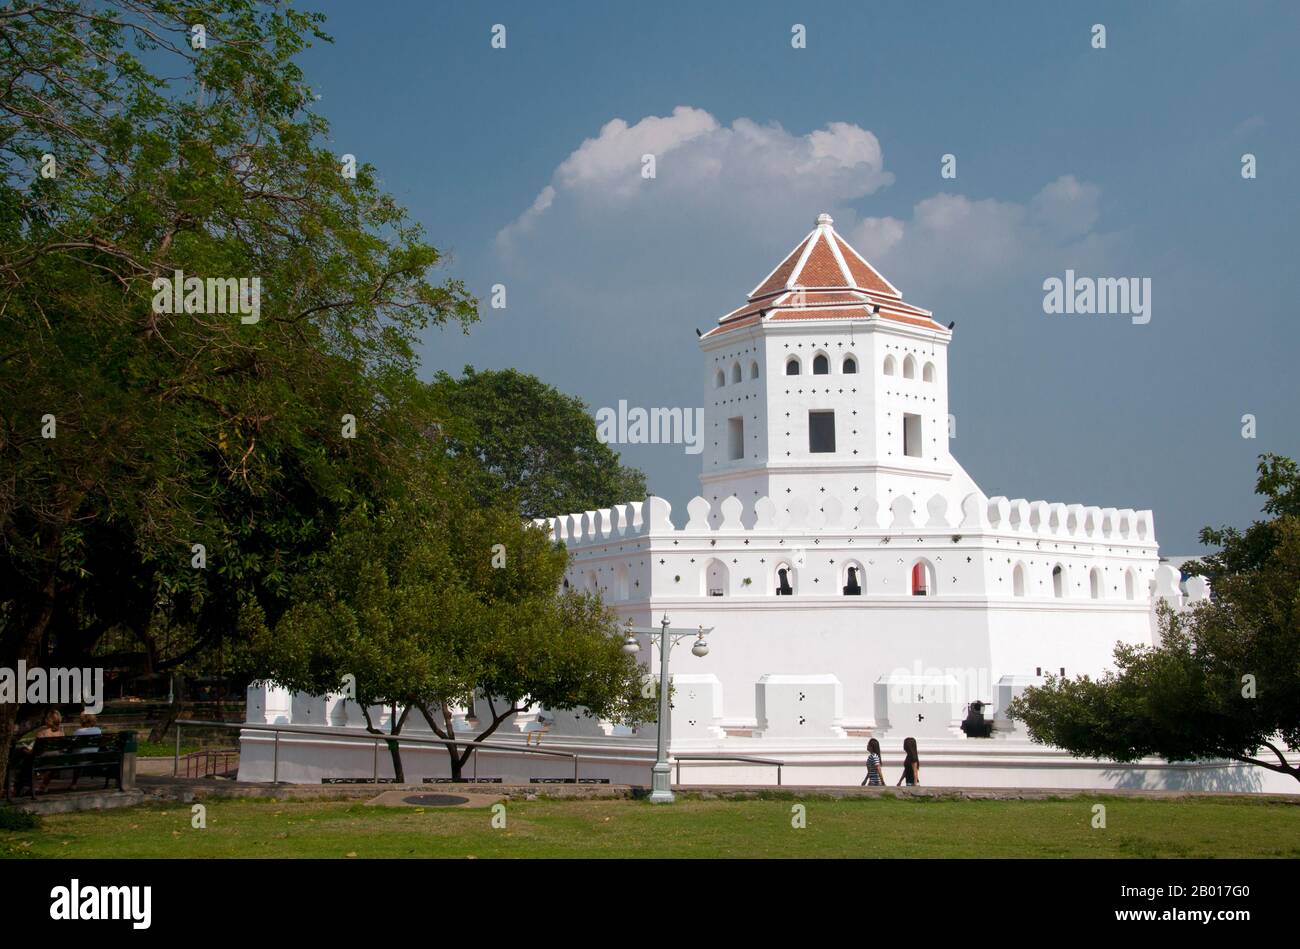 Thailand: Phra Sumen Fort, Bangkok. Das Fort Phra Sumen wurde 1783 unter König Buddha Yodfa Chulaloke (Rama I) erbaut. Es ist eine von 14 Festungen, die zum Schutz Bangkoks verwendet wurden. Heute überleben nur noch zwei, Phra Sumen Fort und Fort Mahakan. Stockfoto